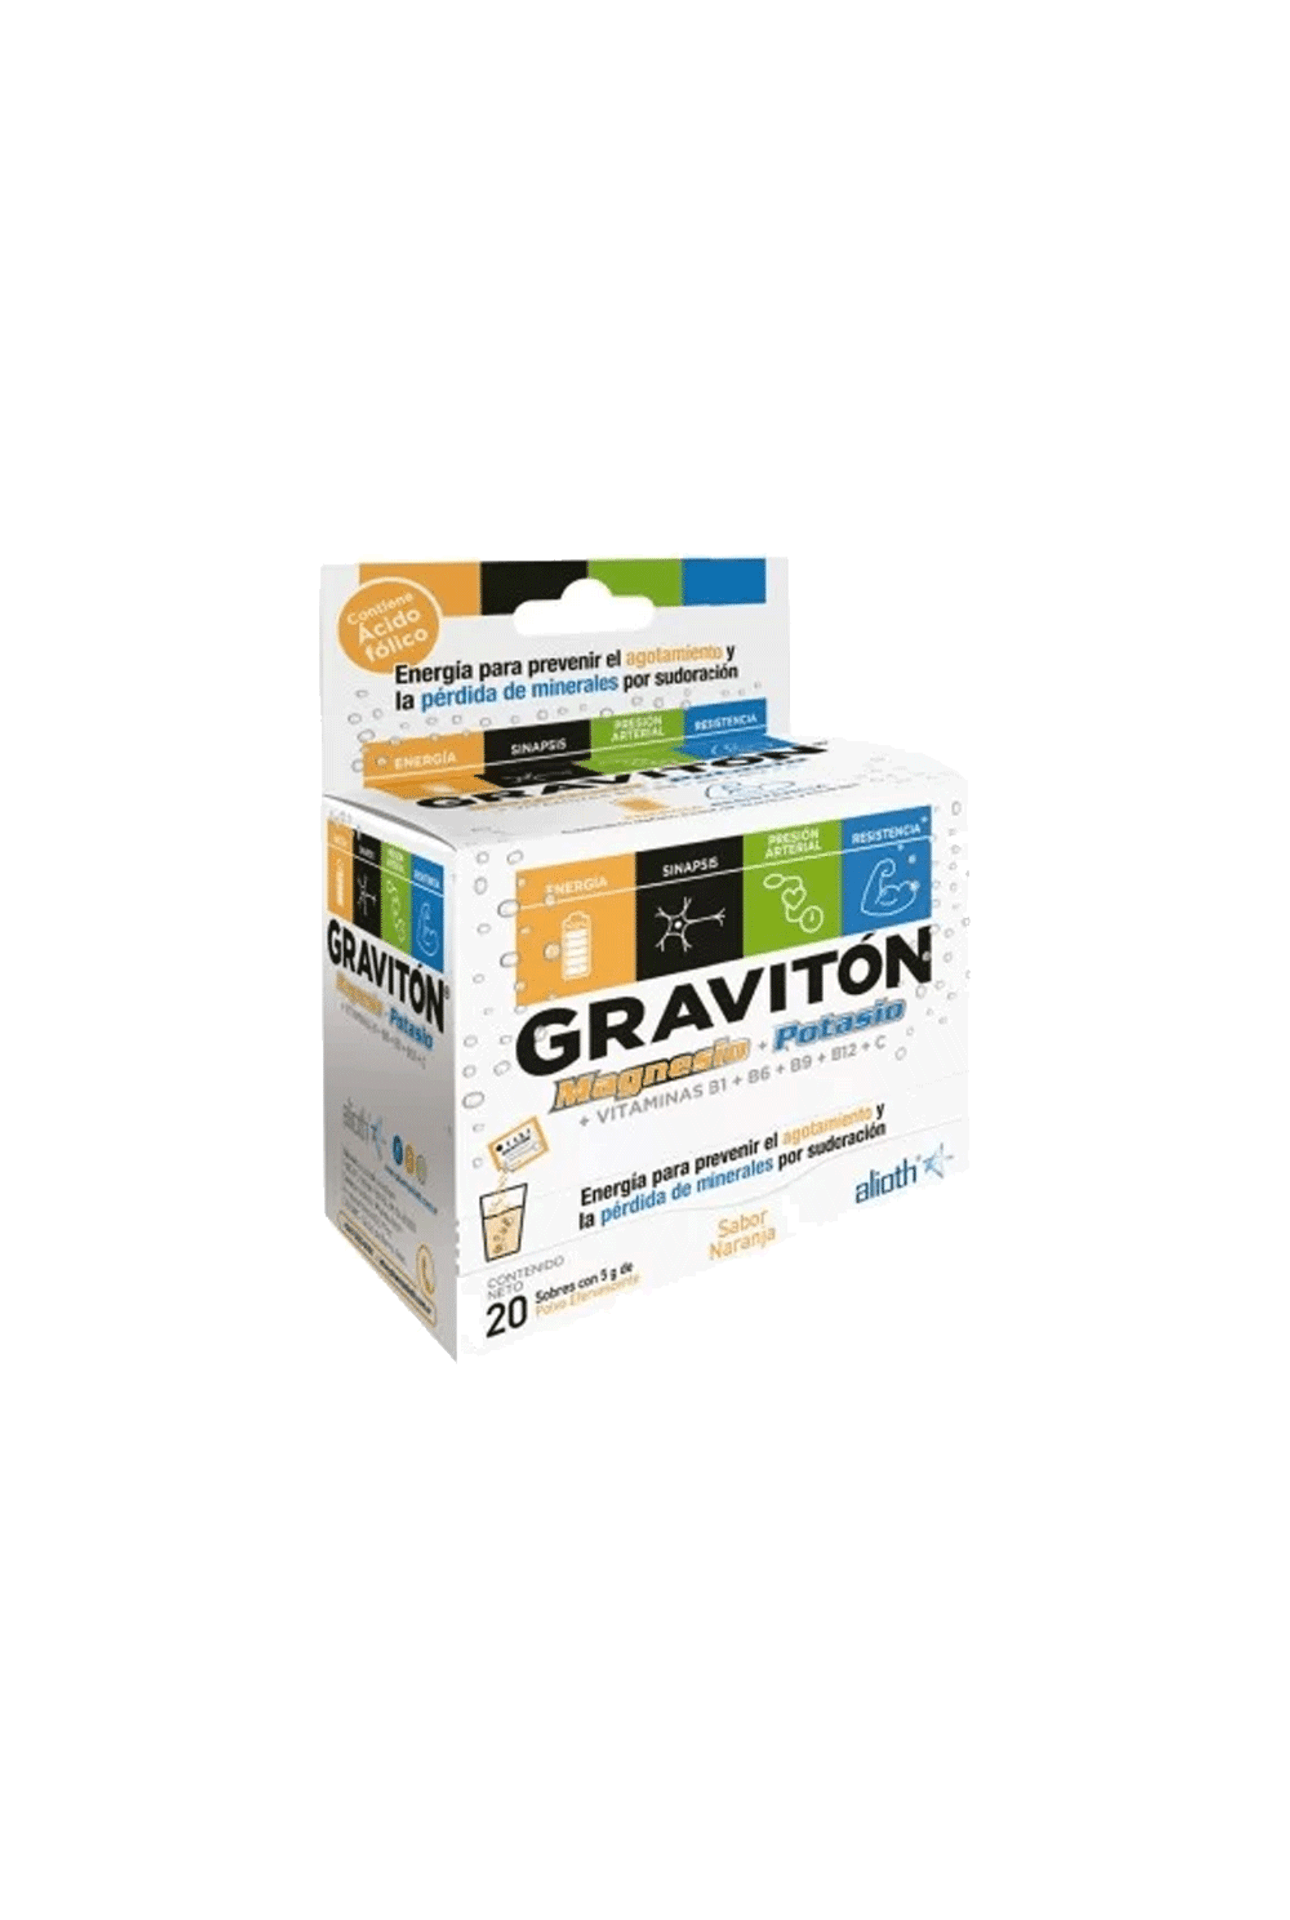 Graviton-Graviton-Magnesio---Potasio-7795513181355_img1